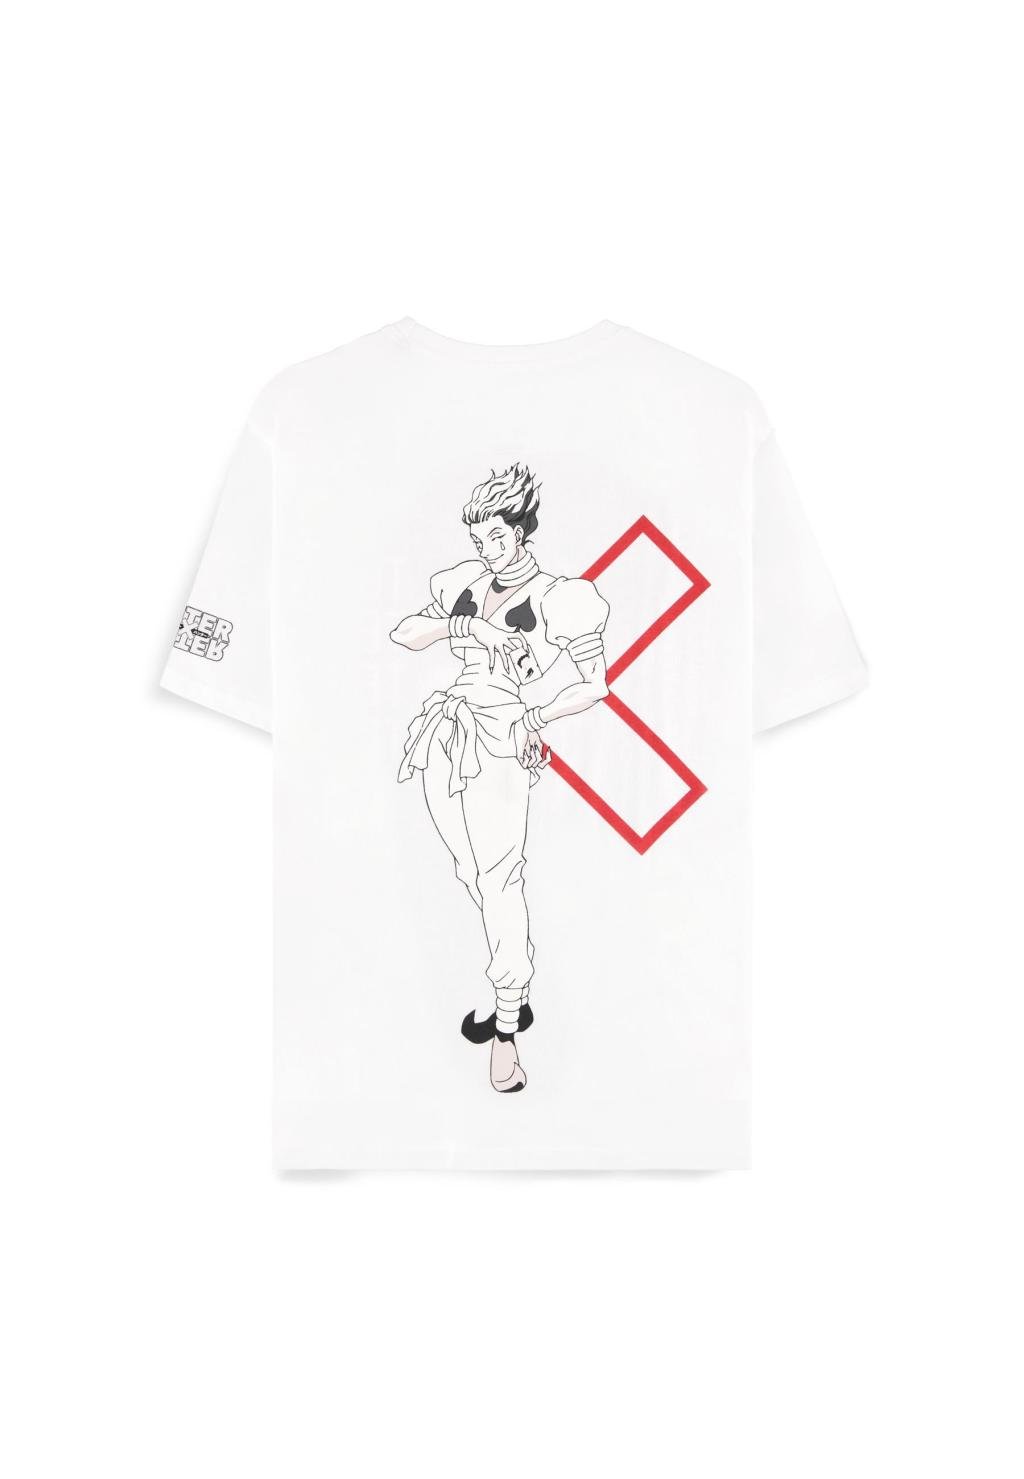 HUNTER X HUNTER - Hisoka - Women's T-shirt (XS)